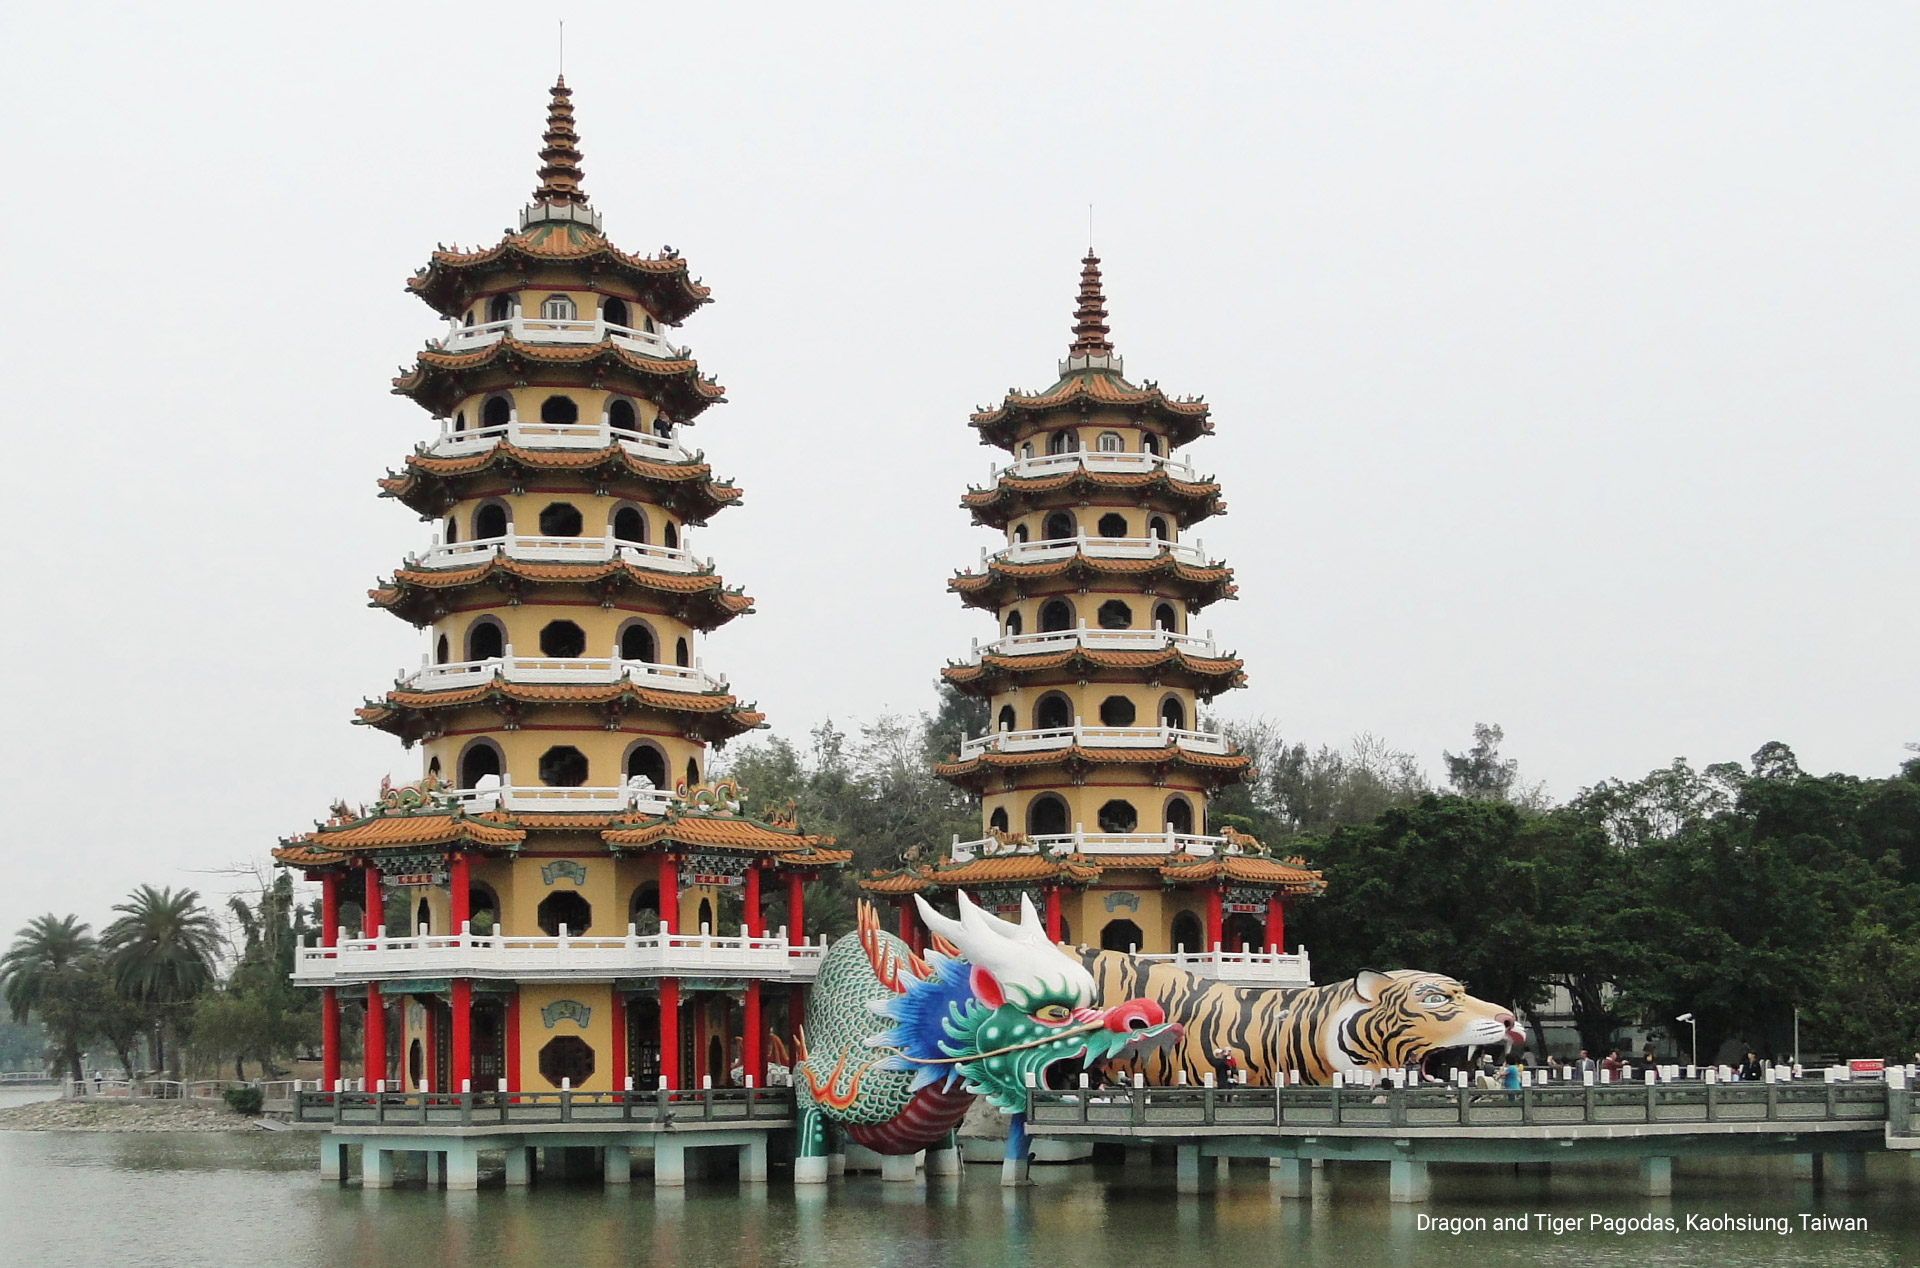 Dragon and Tiger Pagodas, Kaohsiung, Taiwan